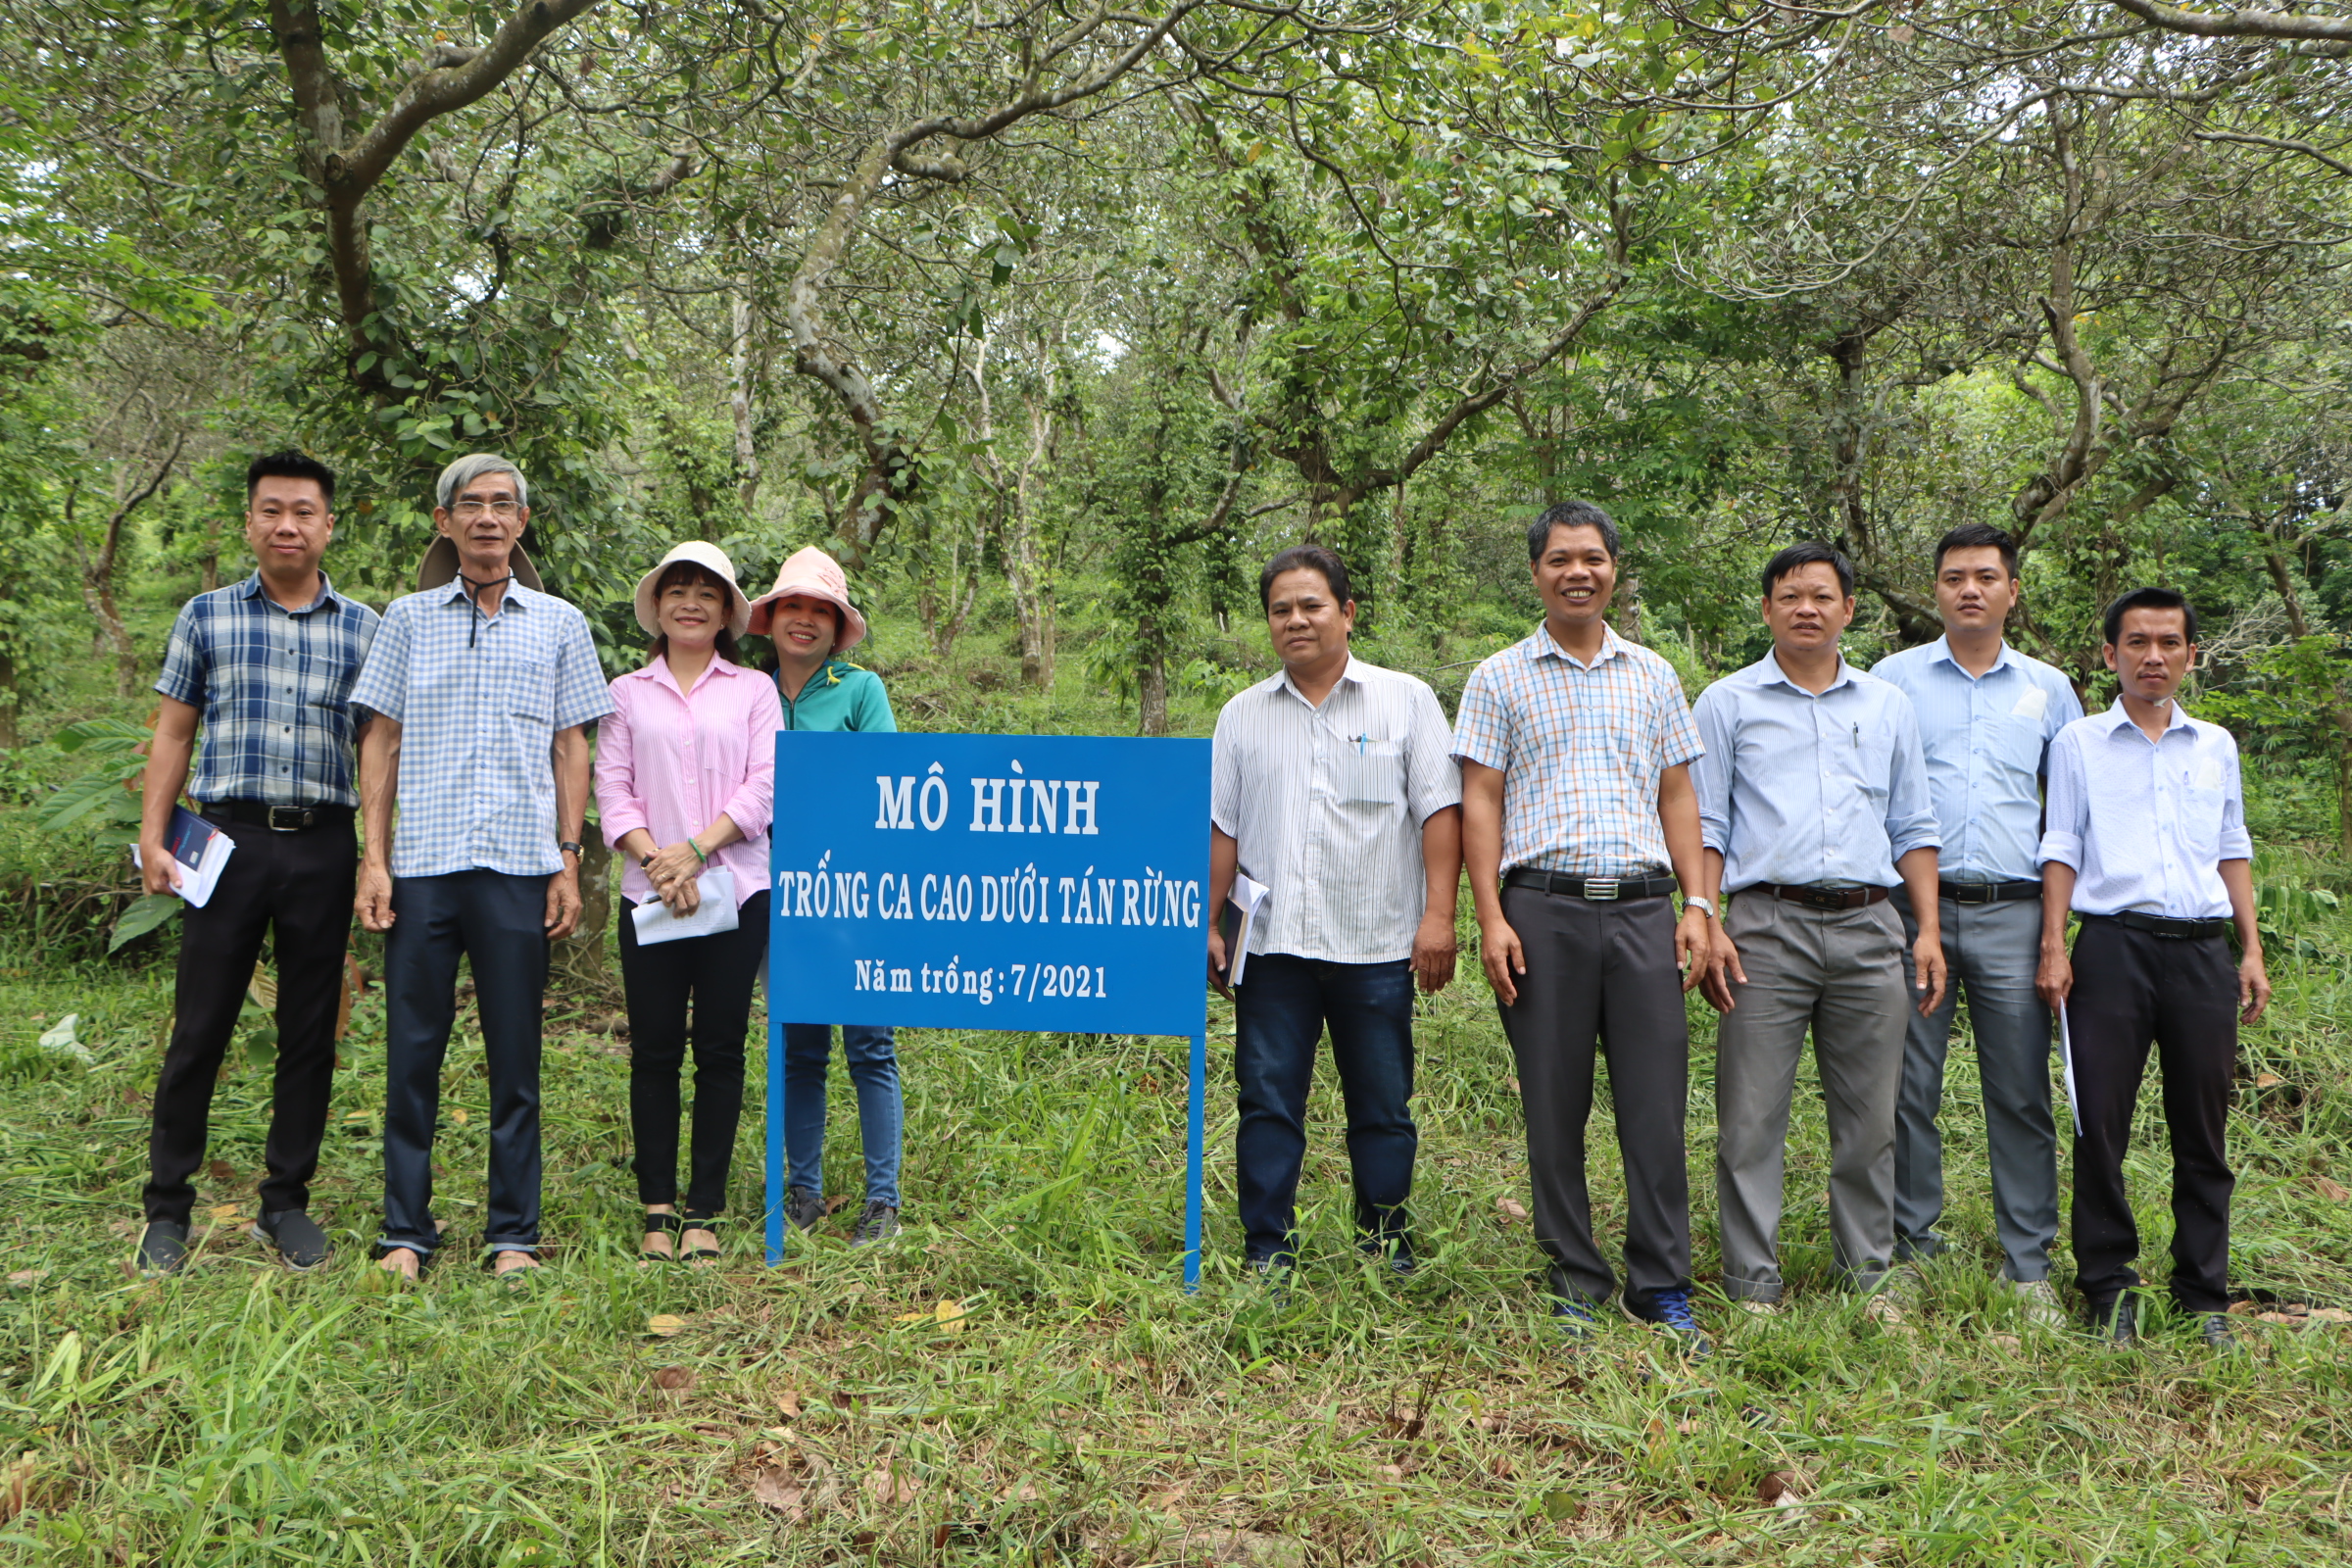 Kiểm tra tiến độ thực hiện Đề tài: “Nghiên cứu tổng hợp biện pháp kỹ thuật trồng ca cao dưới tán rừng tại Đồng Nai”